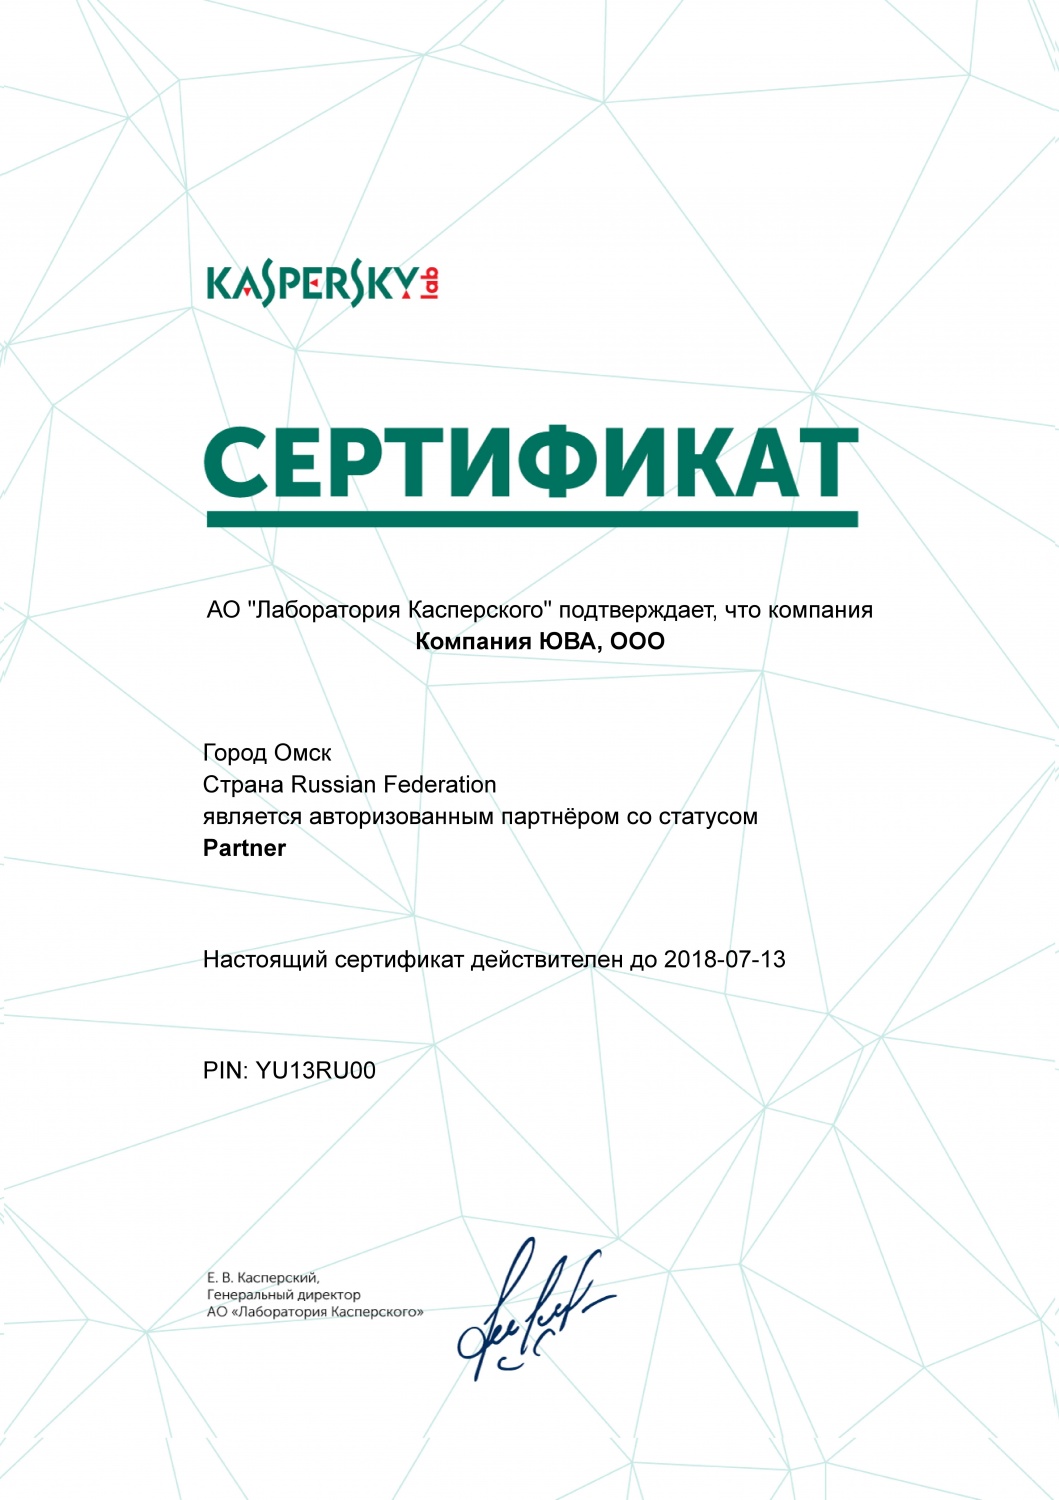 Сертификат АО "Лаборатория Касперского"